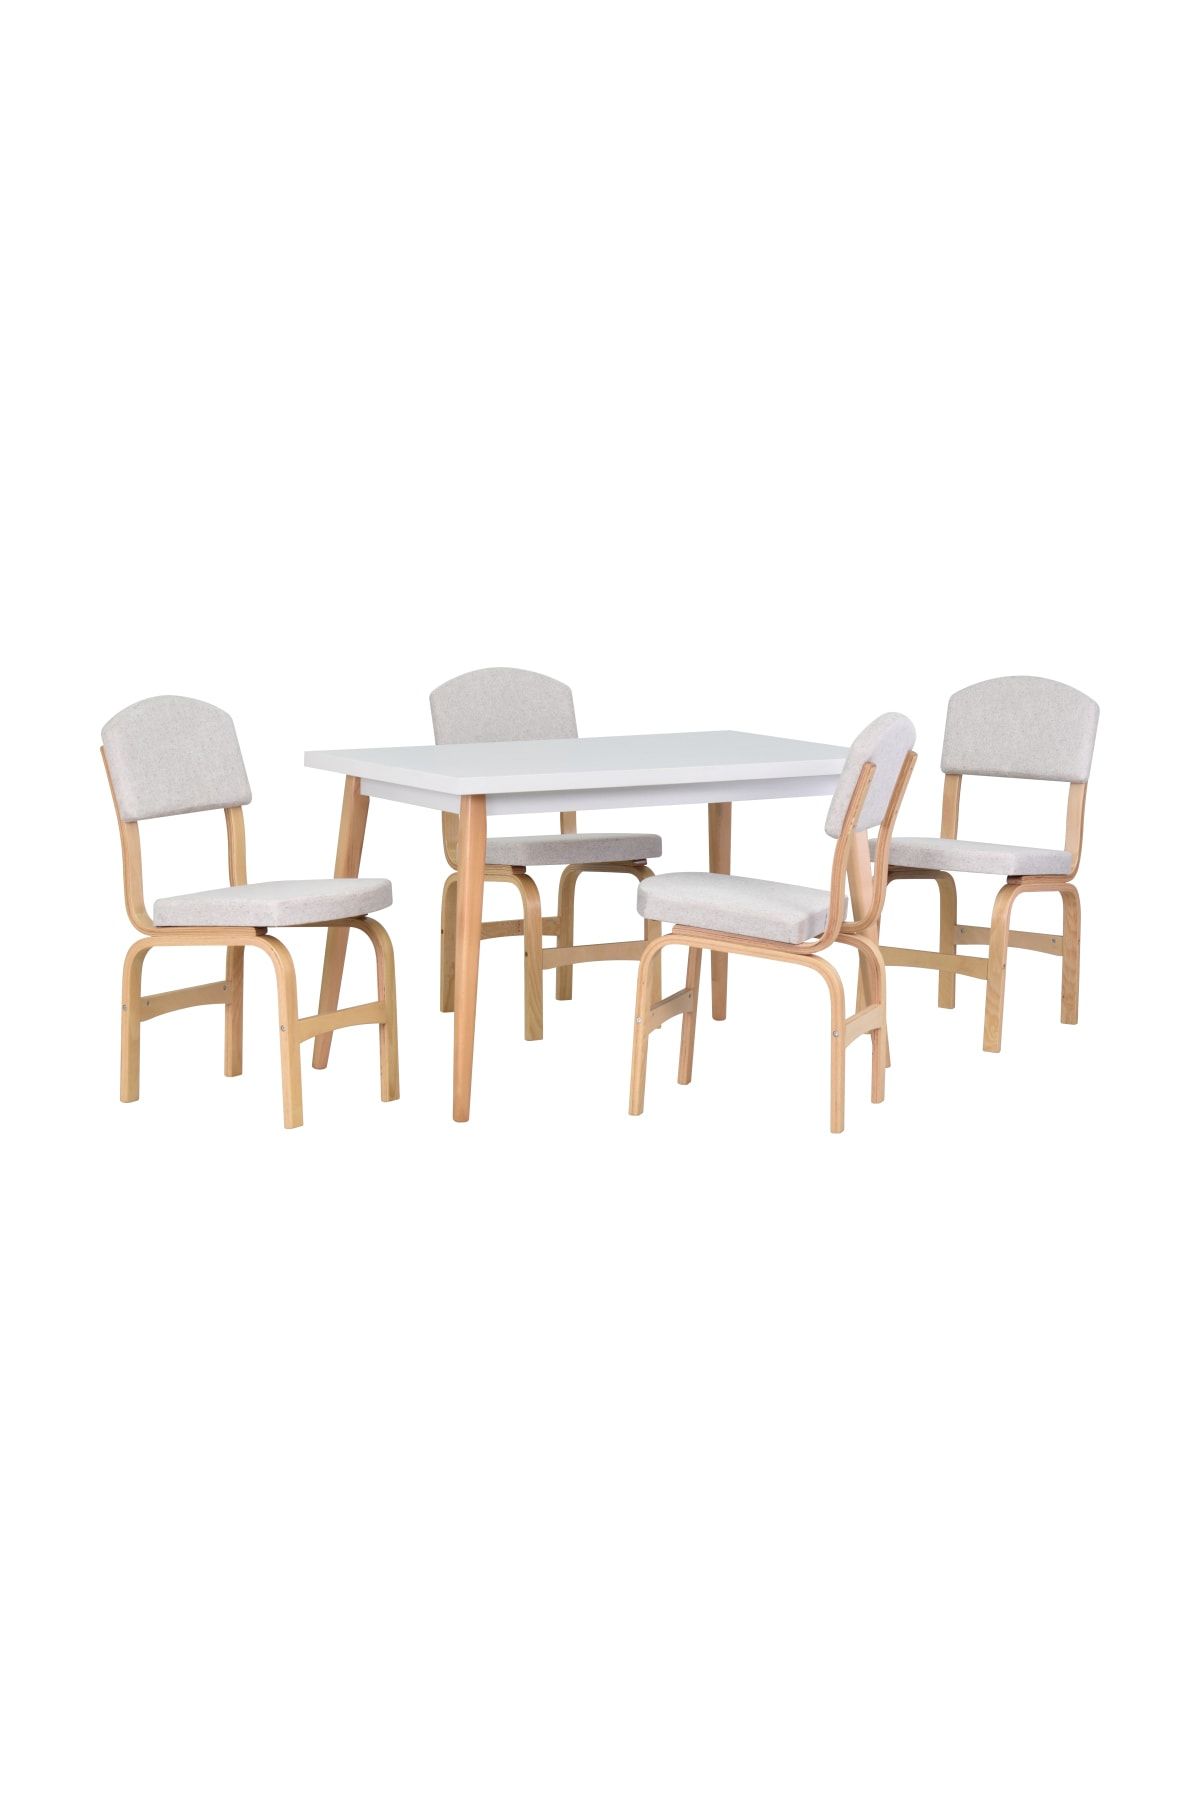 VİLİNZE Ege Sandalye Avanos Ahşap Mdf Mutfak Masası Takımı - 70x120 Cm